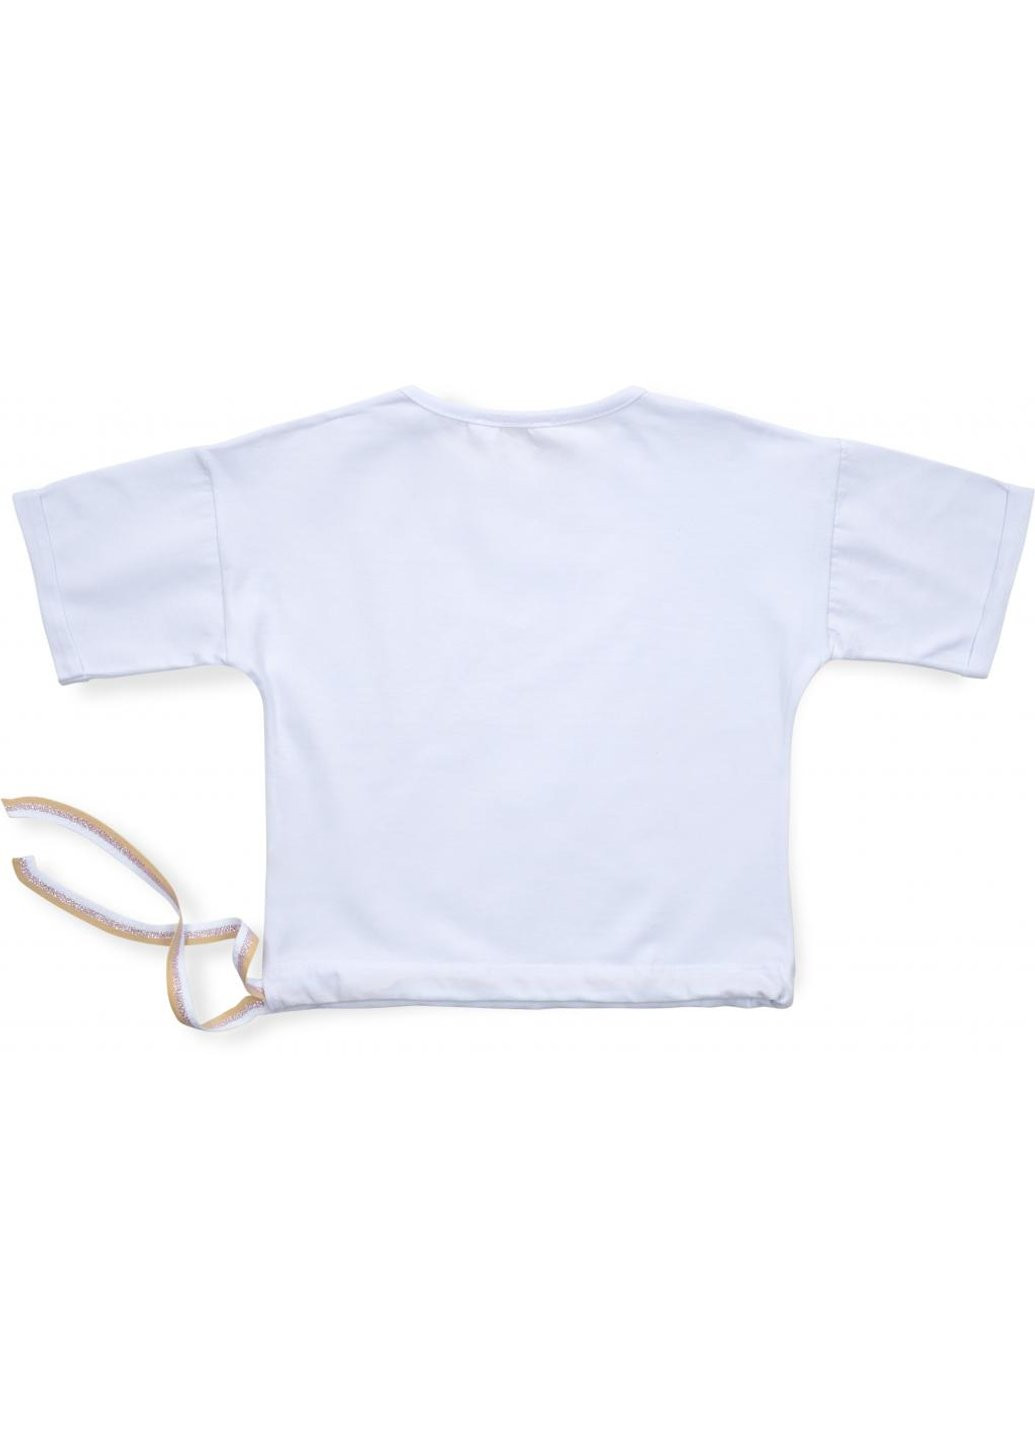 Комбинированная футболка детская одяг с пайеткой (3126-122g-white) Smile